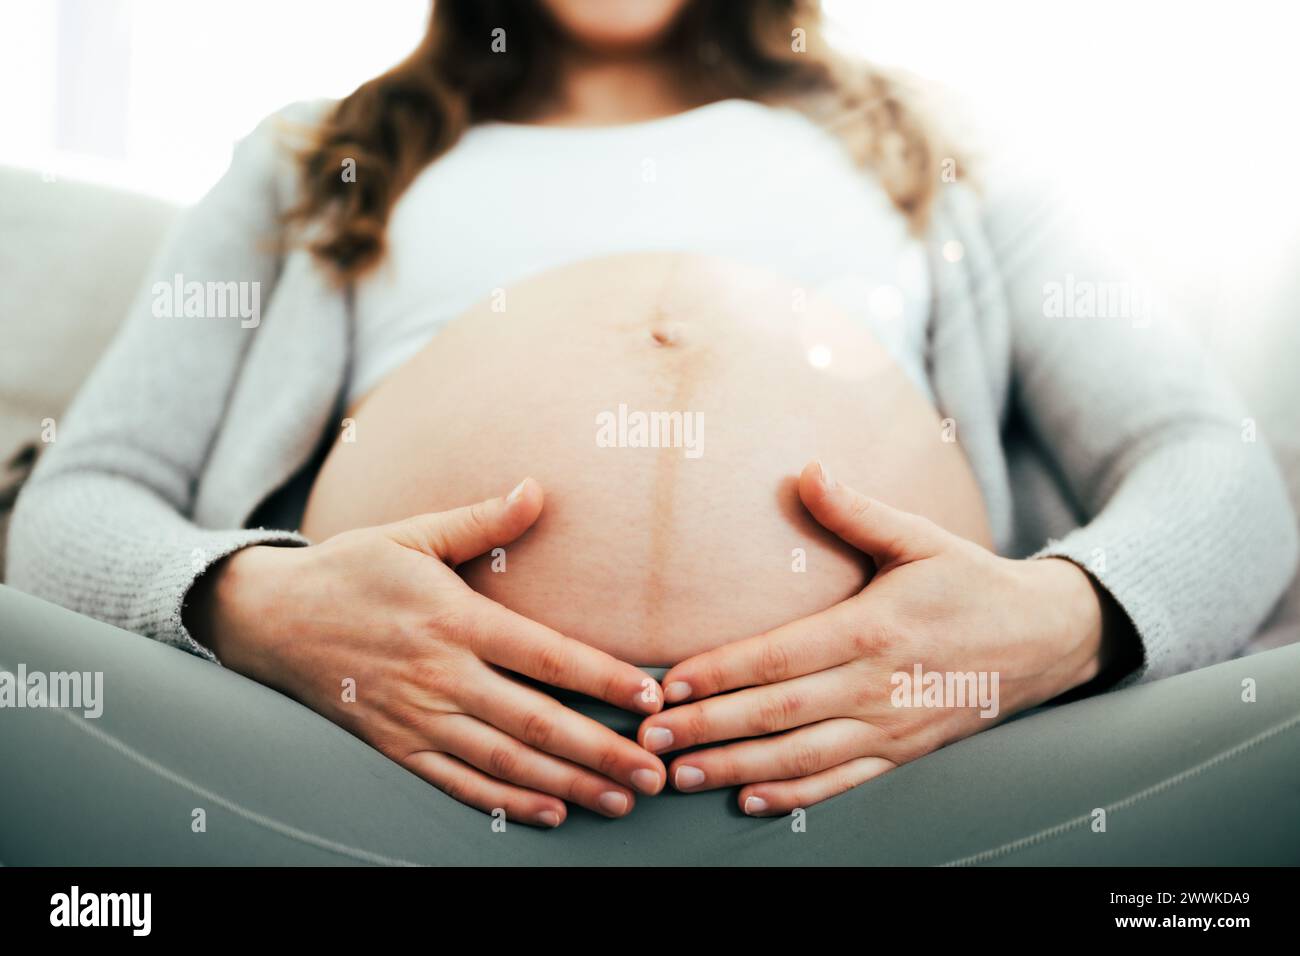 Beschreibung: Frontalansicht einer Frau, die in den letzten Monaten der Schwangerschaft auf dem Sofa sitzt und sanft ihren Bauch hält. Schwangerschaft drittes Trimenon - Woche 34. Frontal Stockfoto